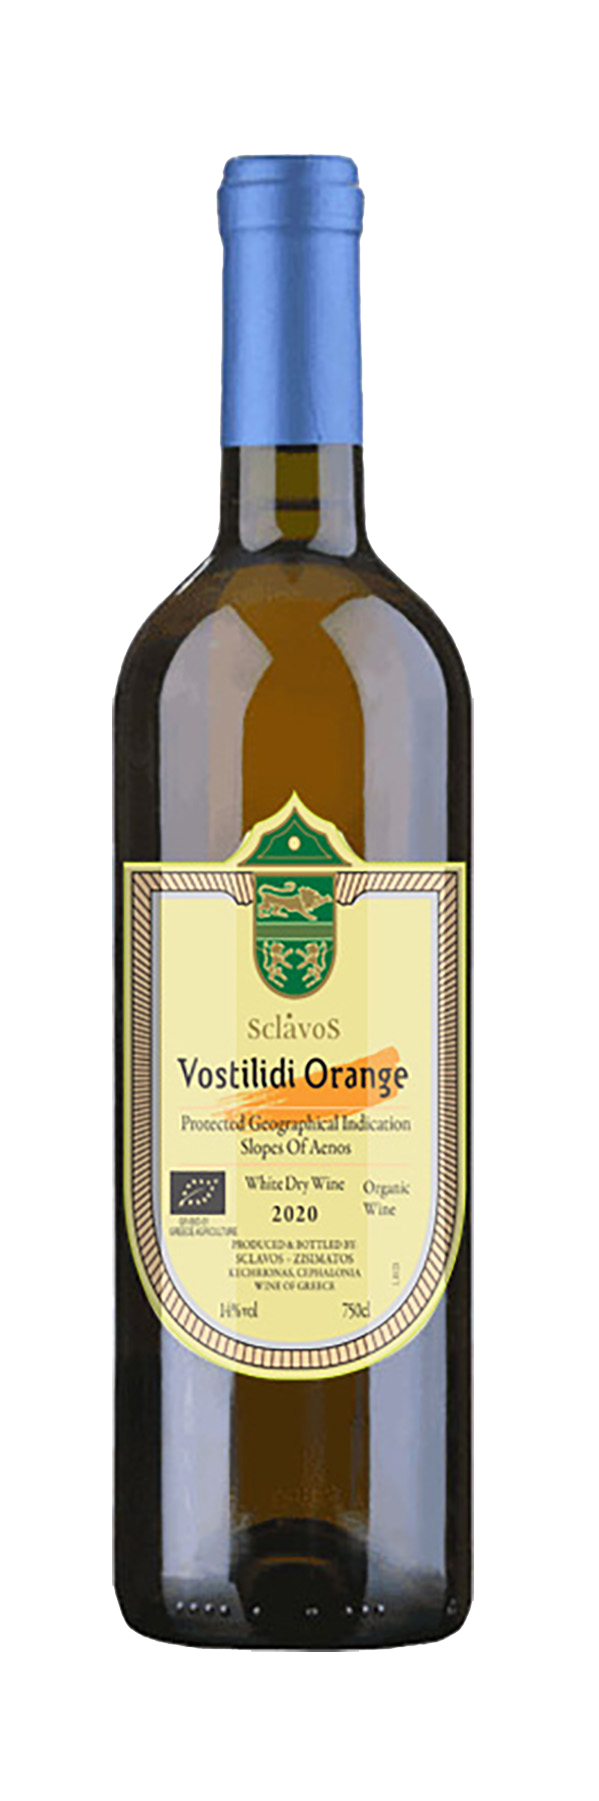 Vostilidi Orange